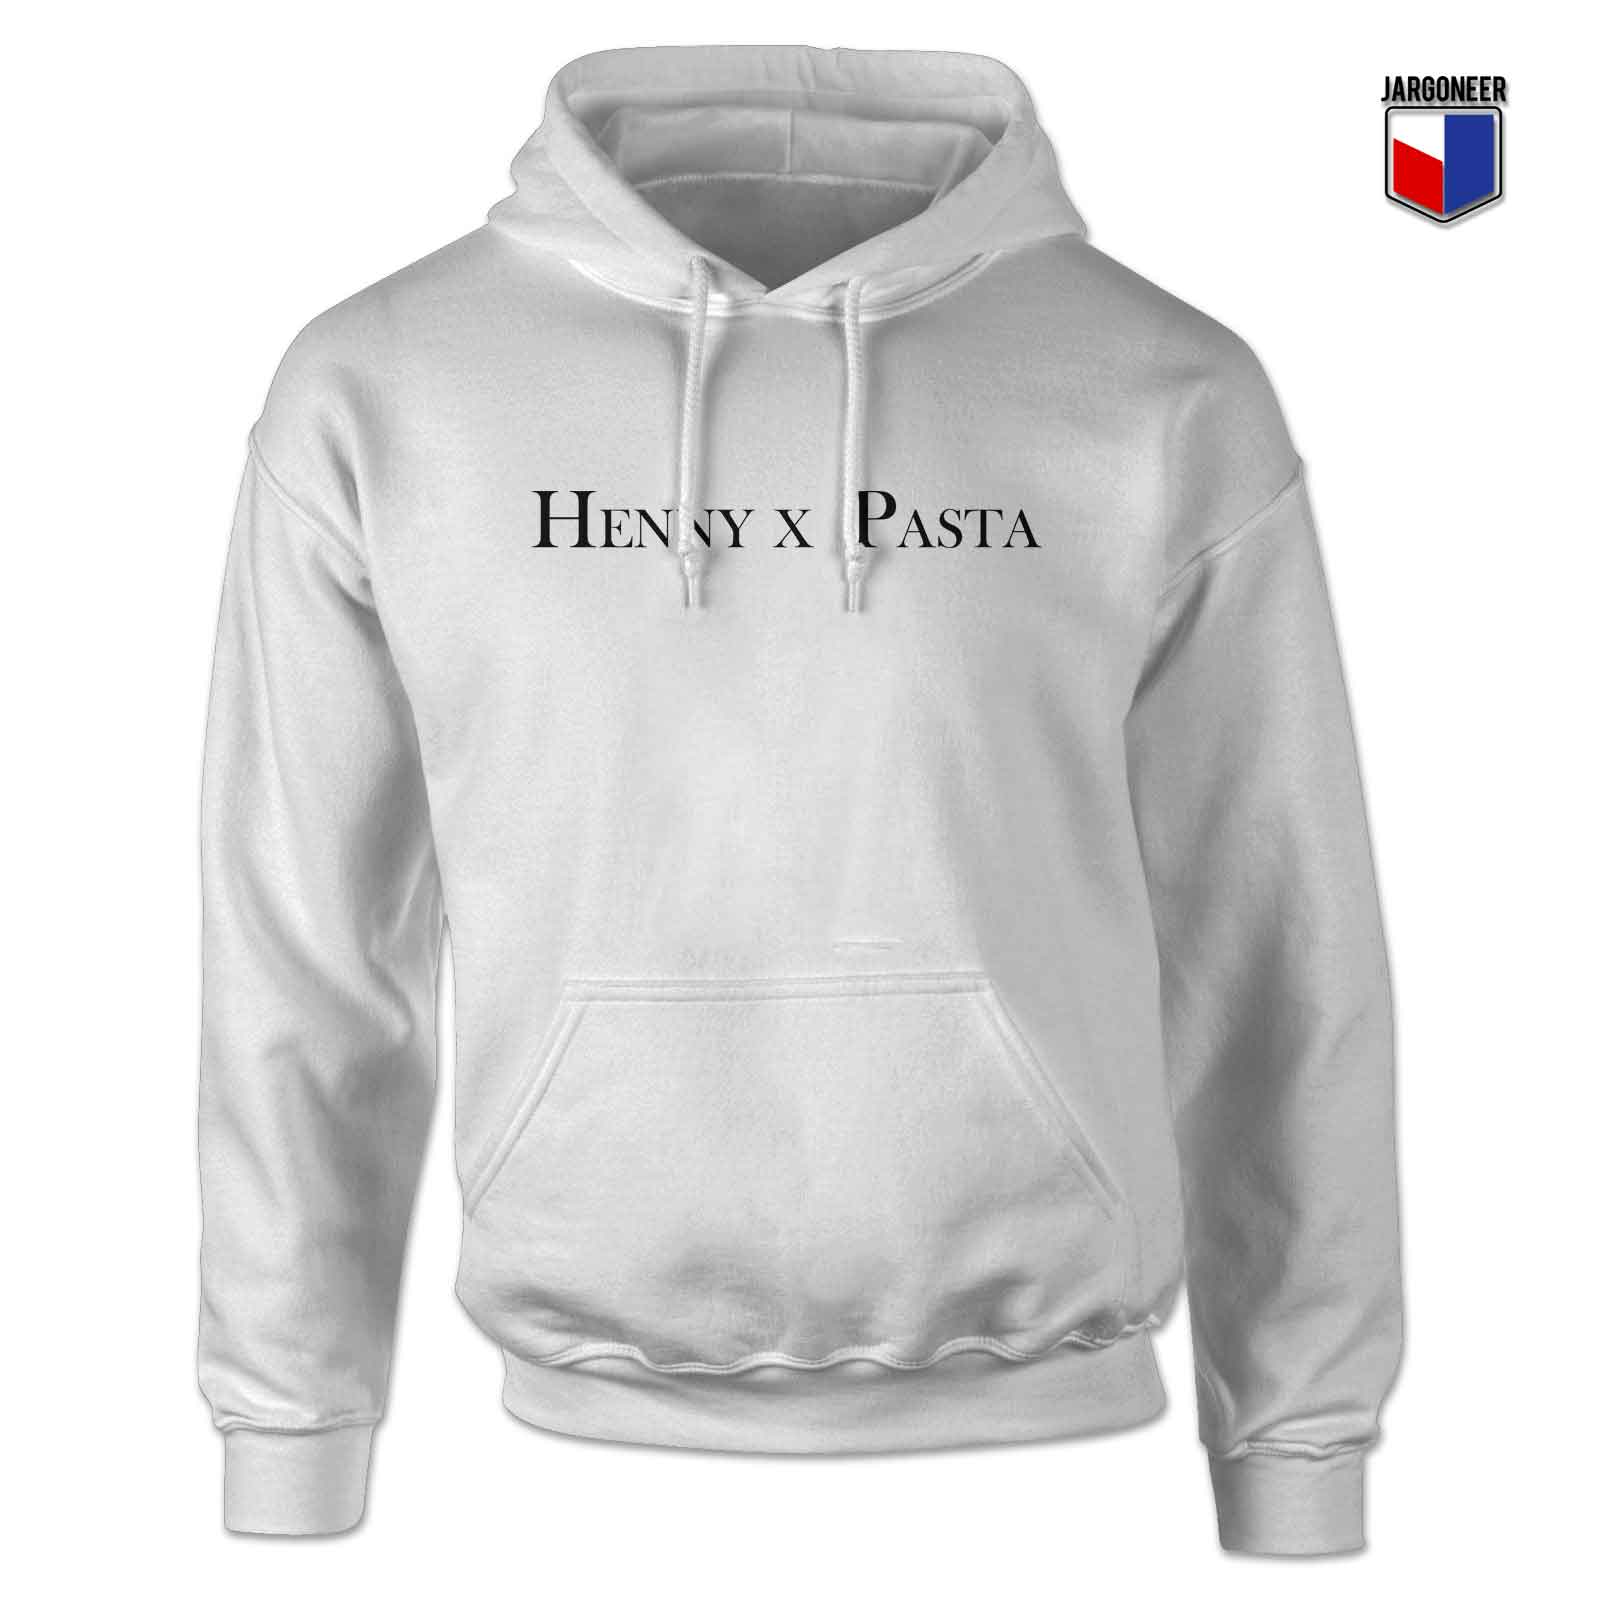 Henny x Pasta 3 - Shop Unique Graphic Cool Shirt Designs